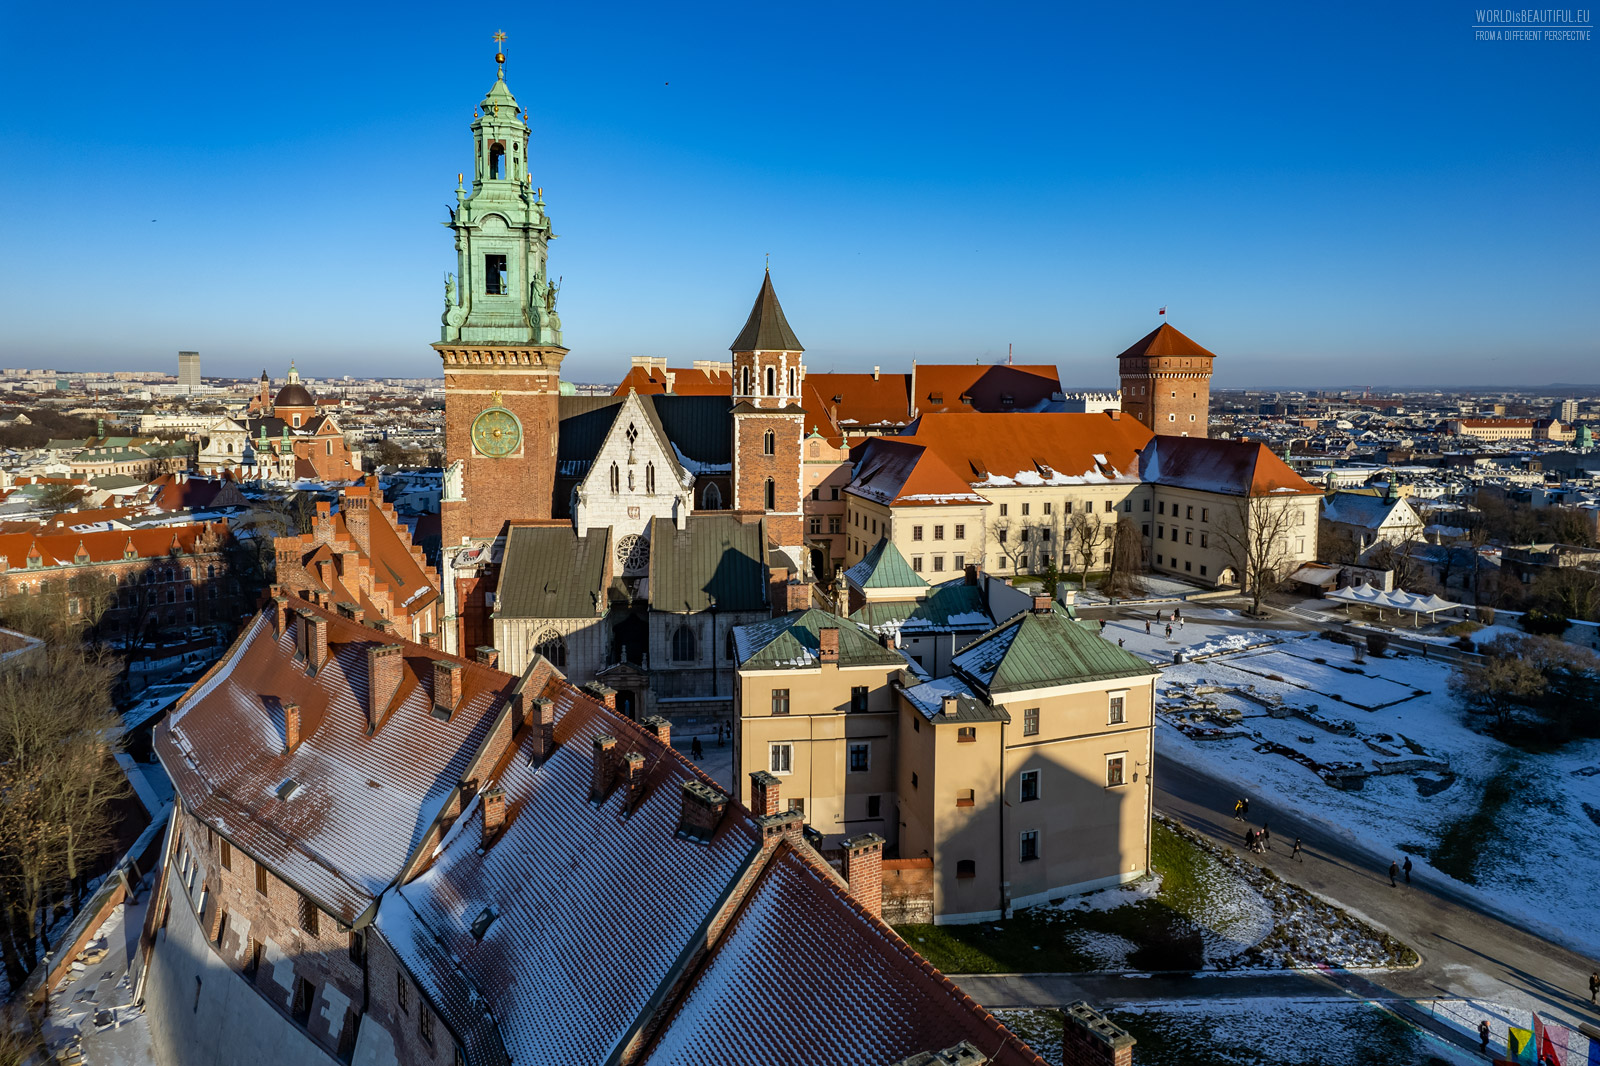 Photos of Wawel in Krakow